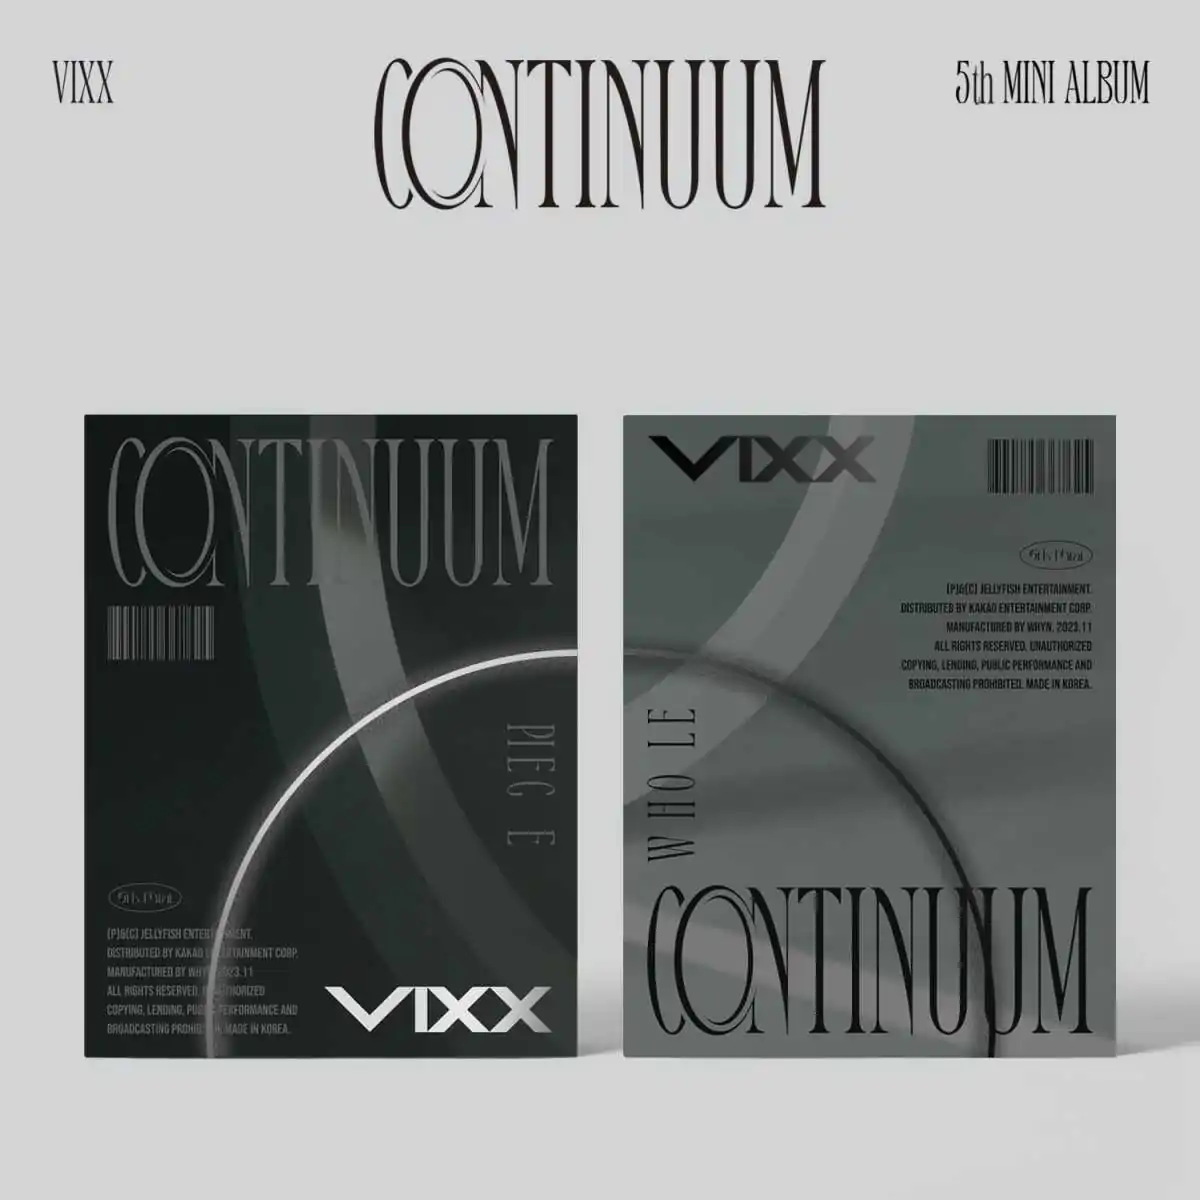 VIXX - CONTINUUM (PIECE version) (5th Mini Album) 